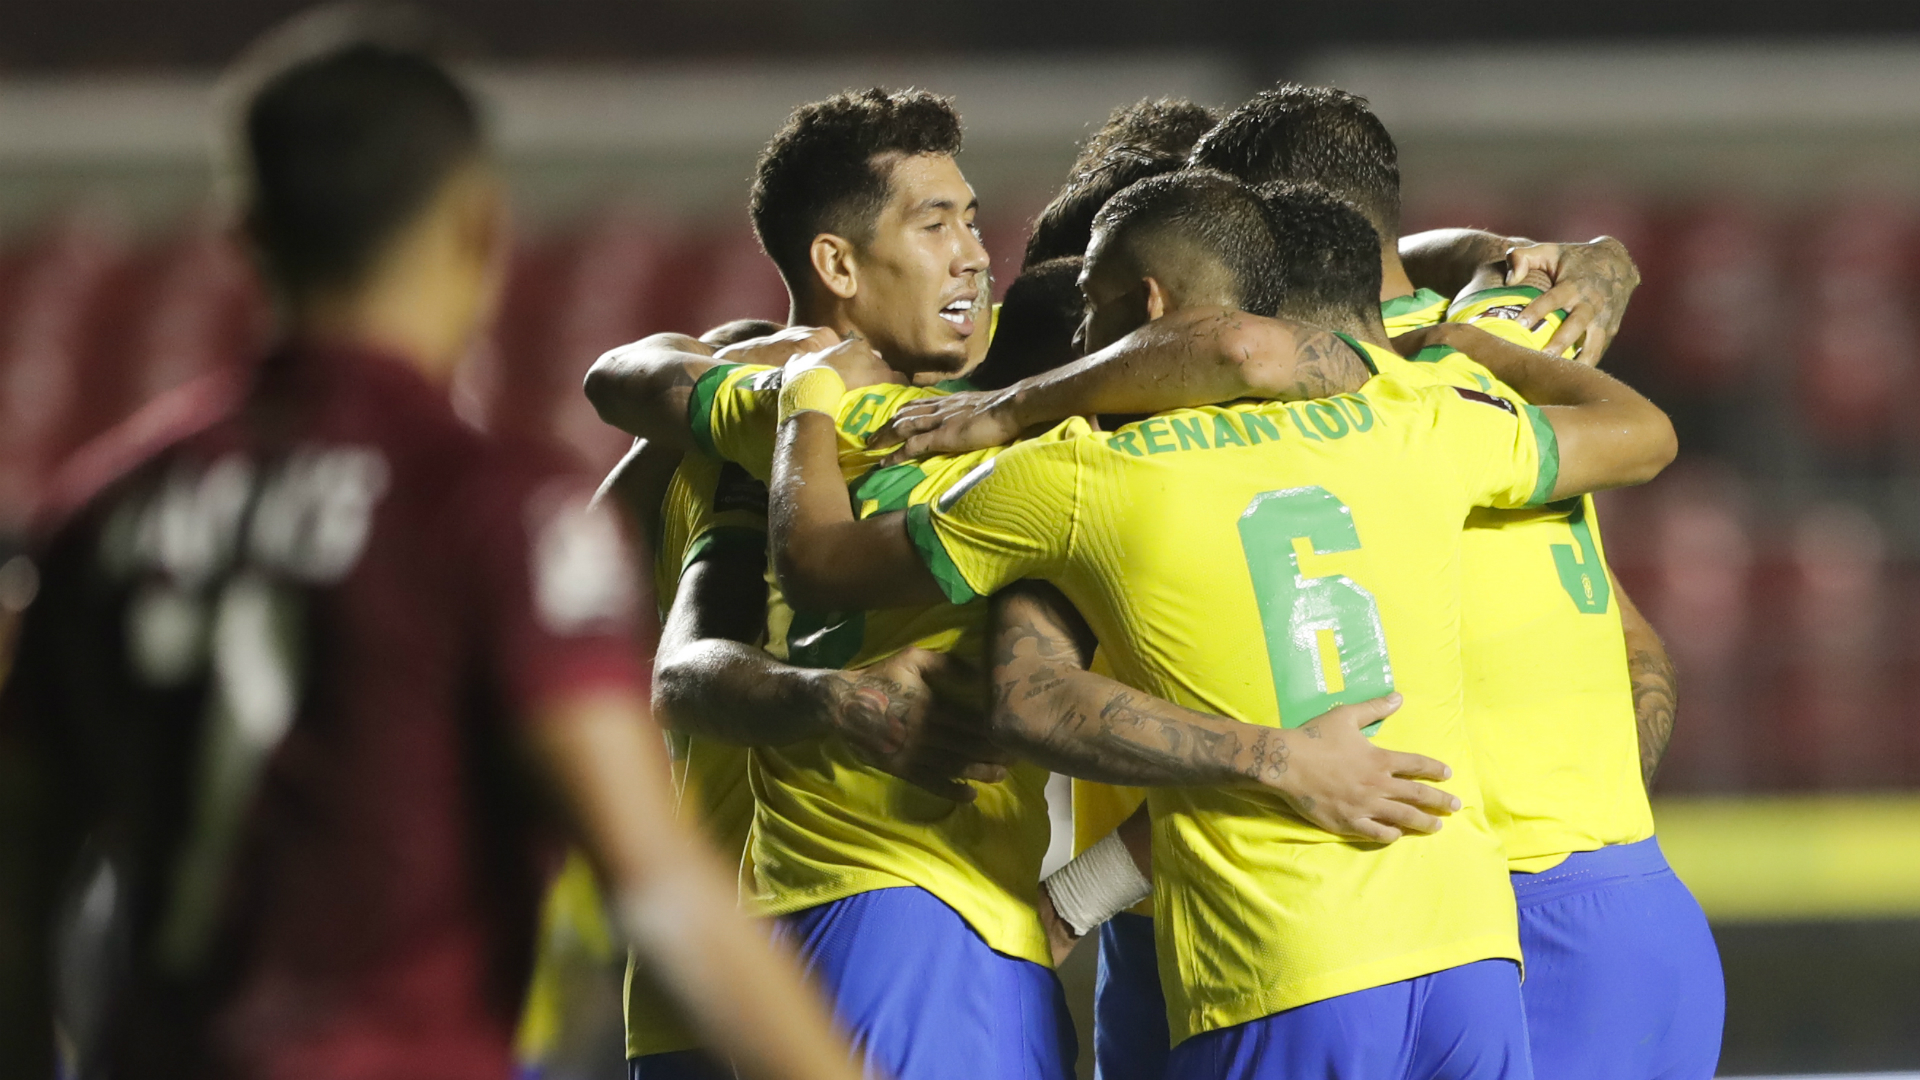 Brésil-Venezuela (1-0) - La Seleçao poursuit son sans faute